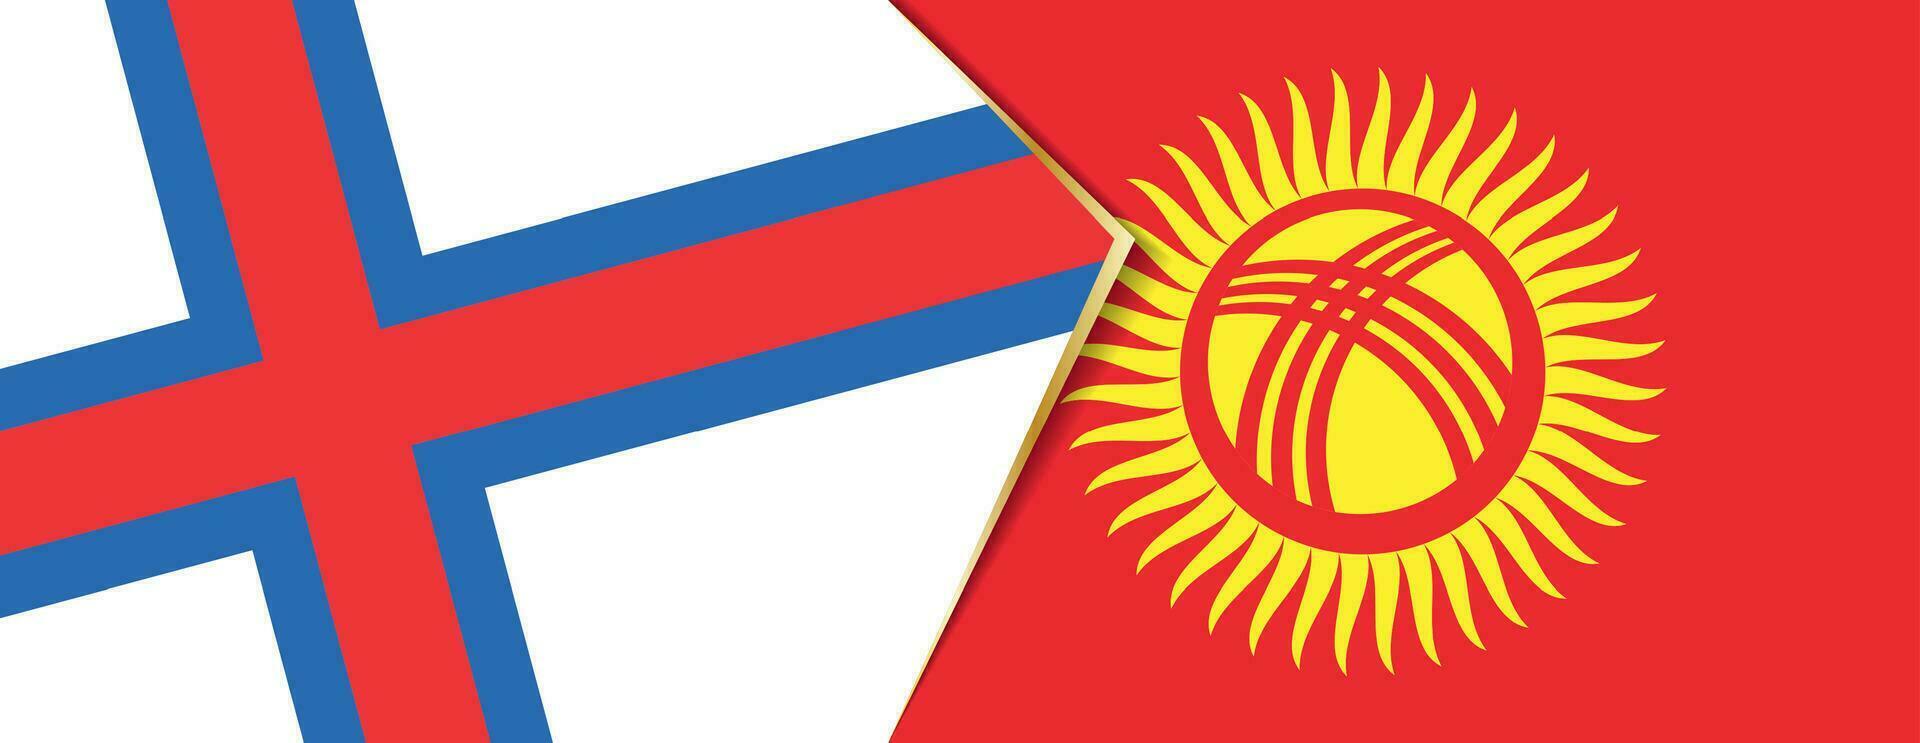 Feroe islas y Kirguistán banderas, dos vector banderas